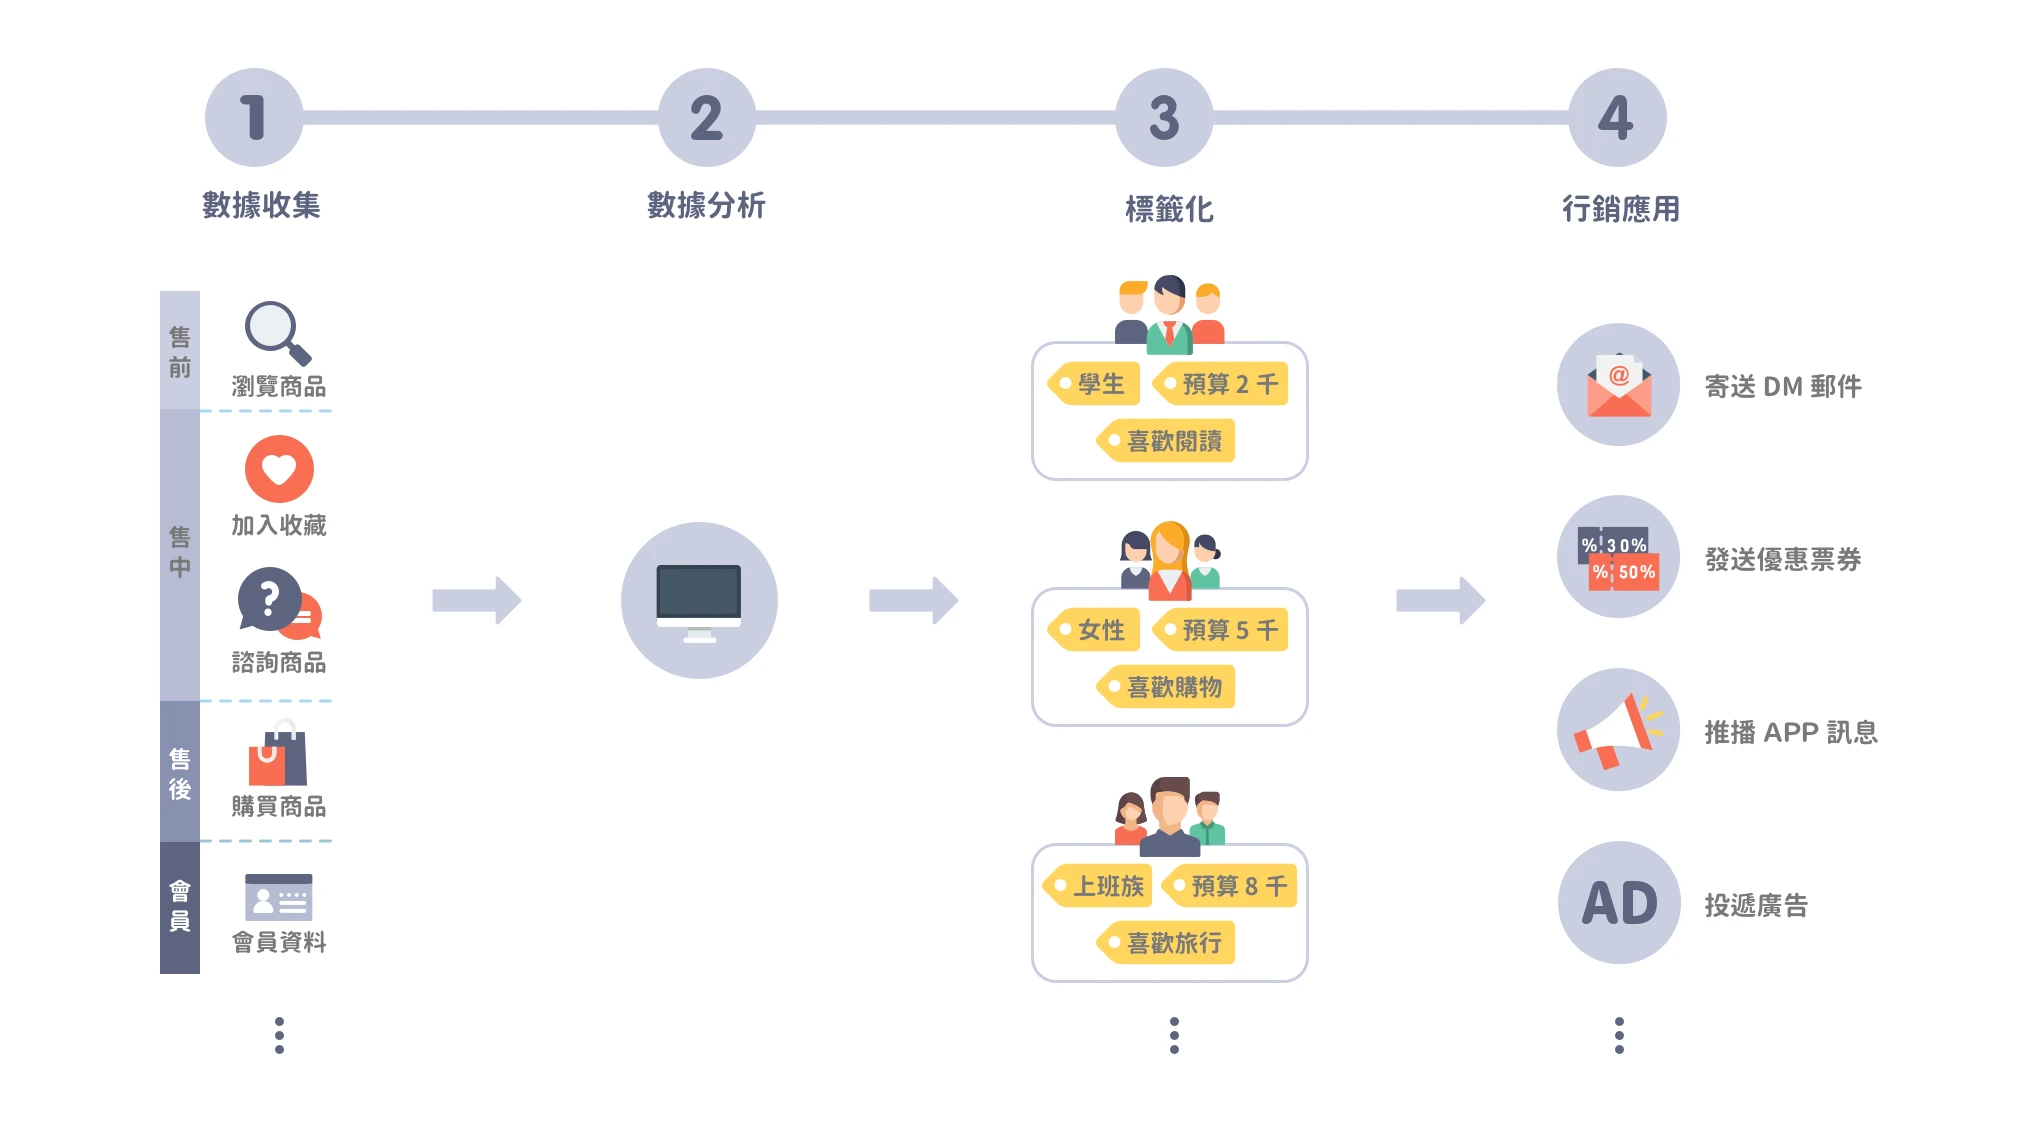 圖 1. 顧客數據平台架構